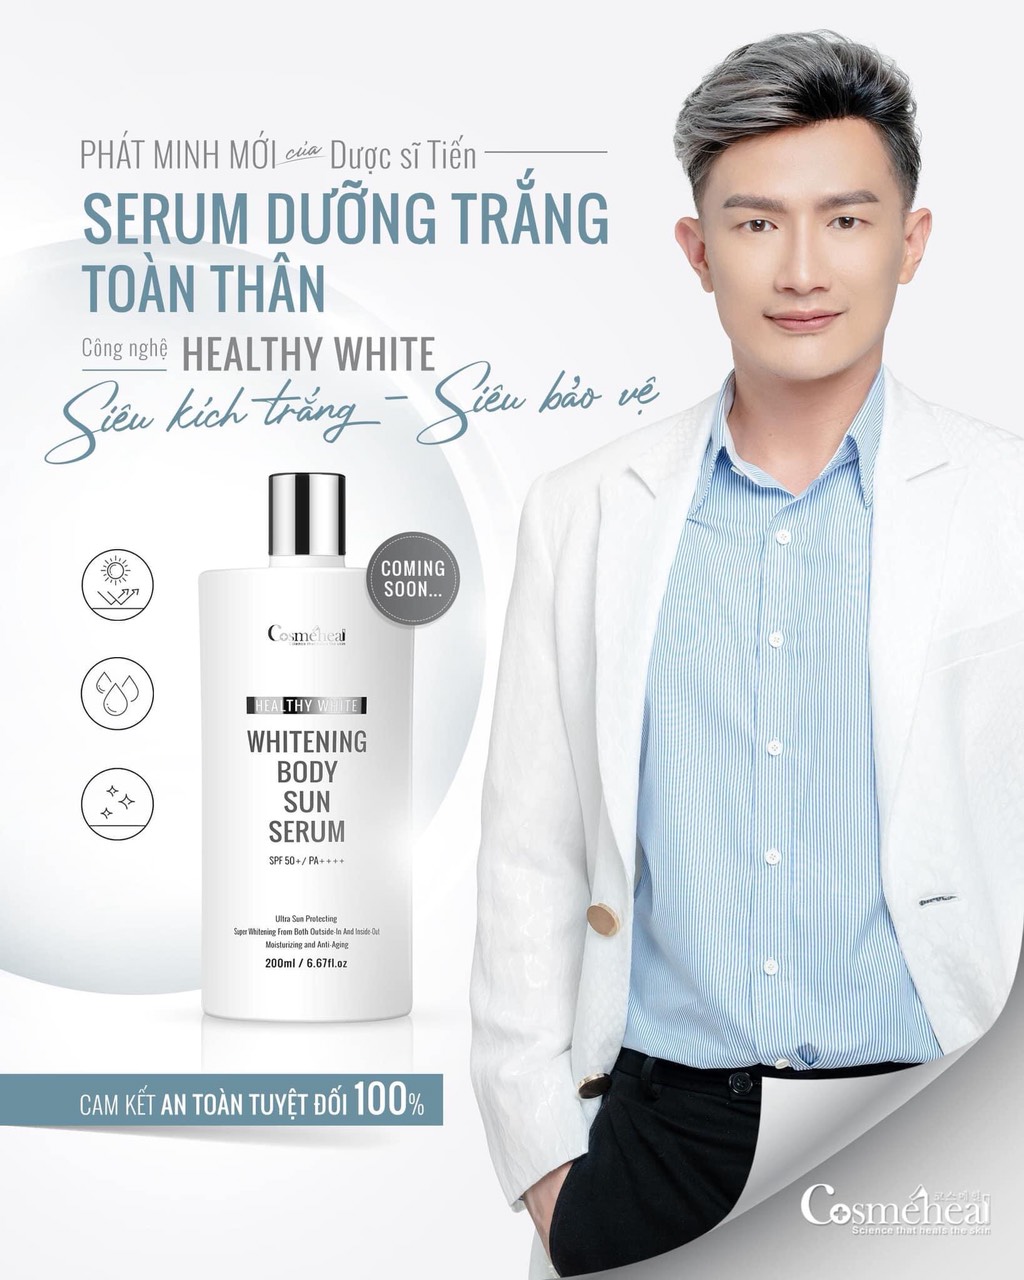  Serum dưỡng trắng toàn thân WHITENING BODY 